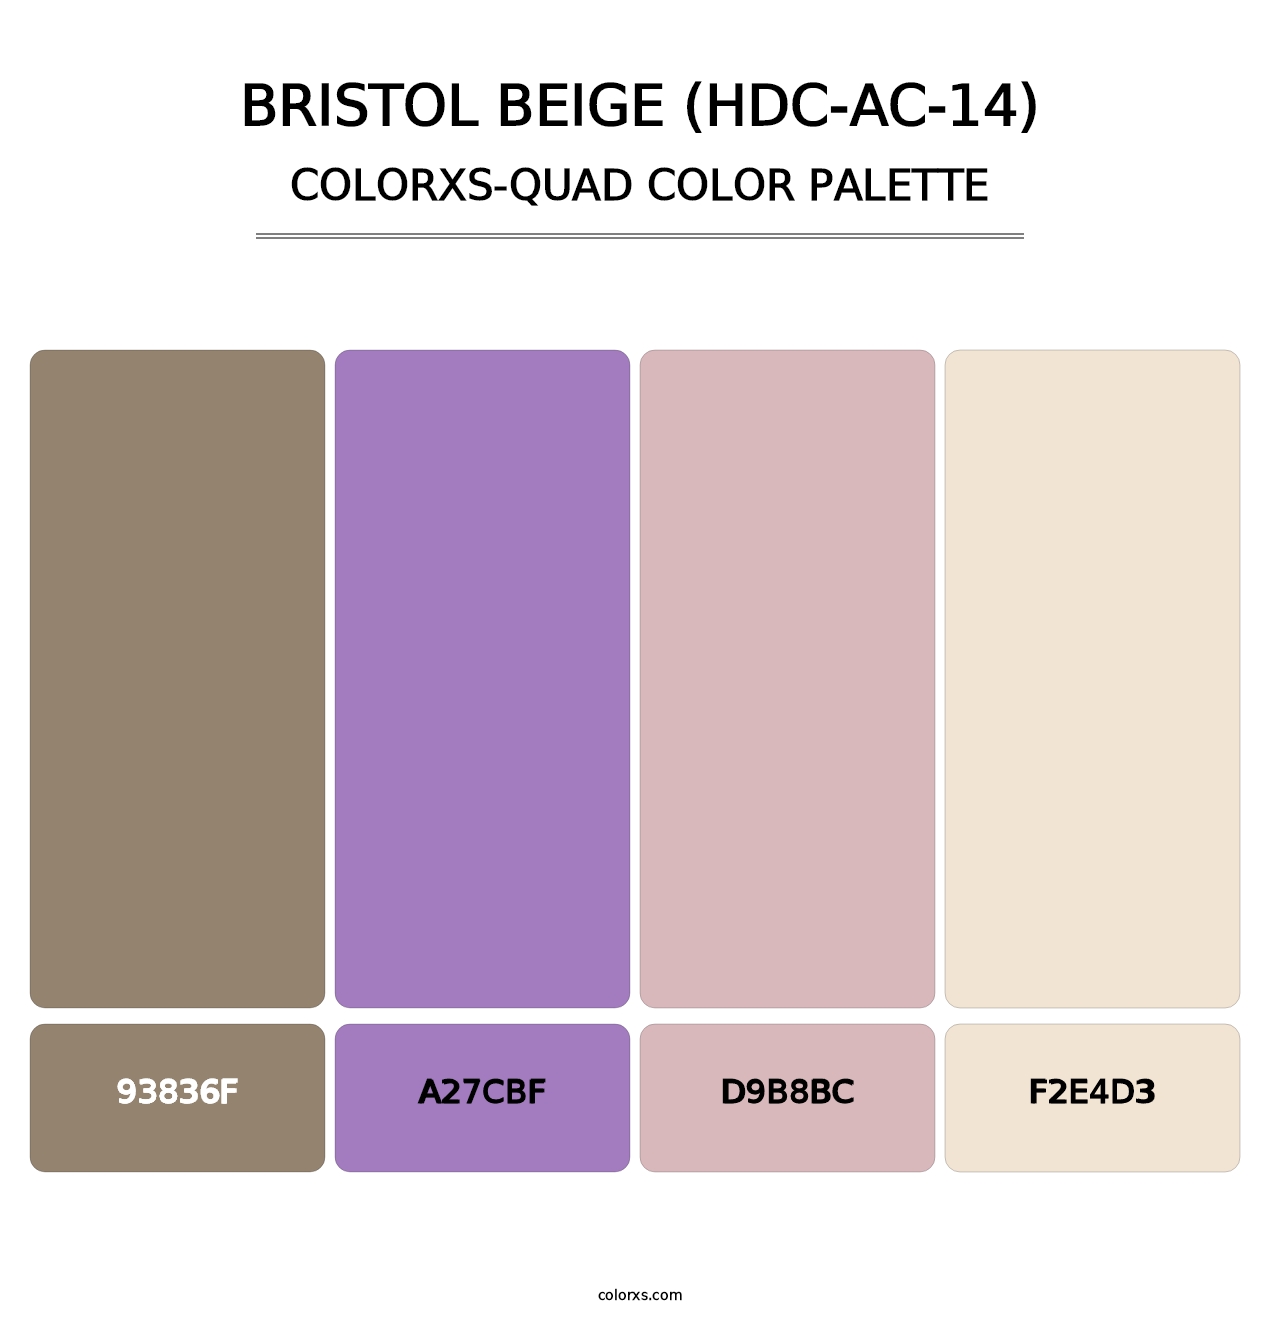 Bristol Beige (HDC-AC-14) - Colorxs Quad Palette